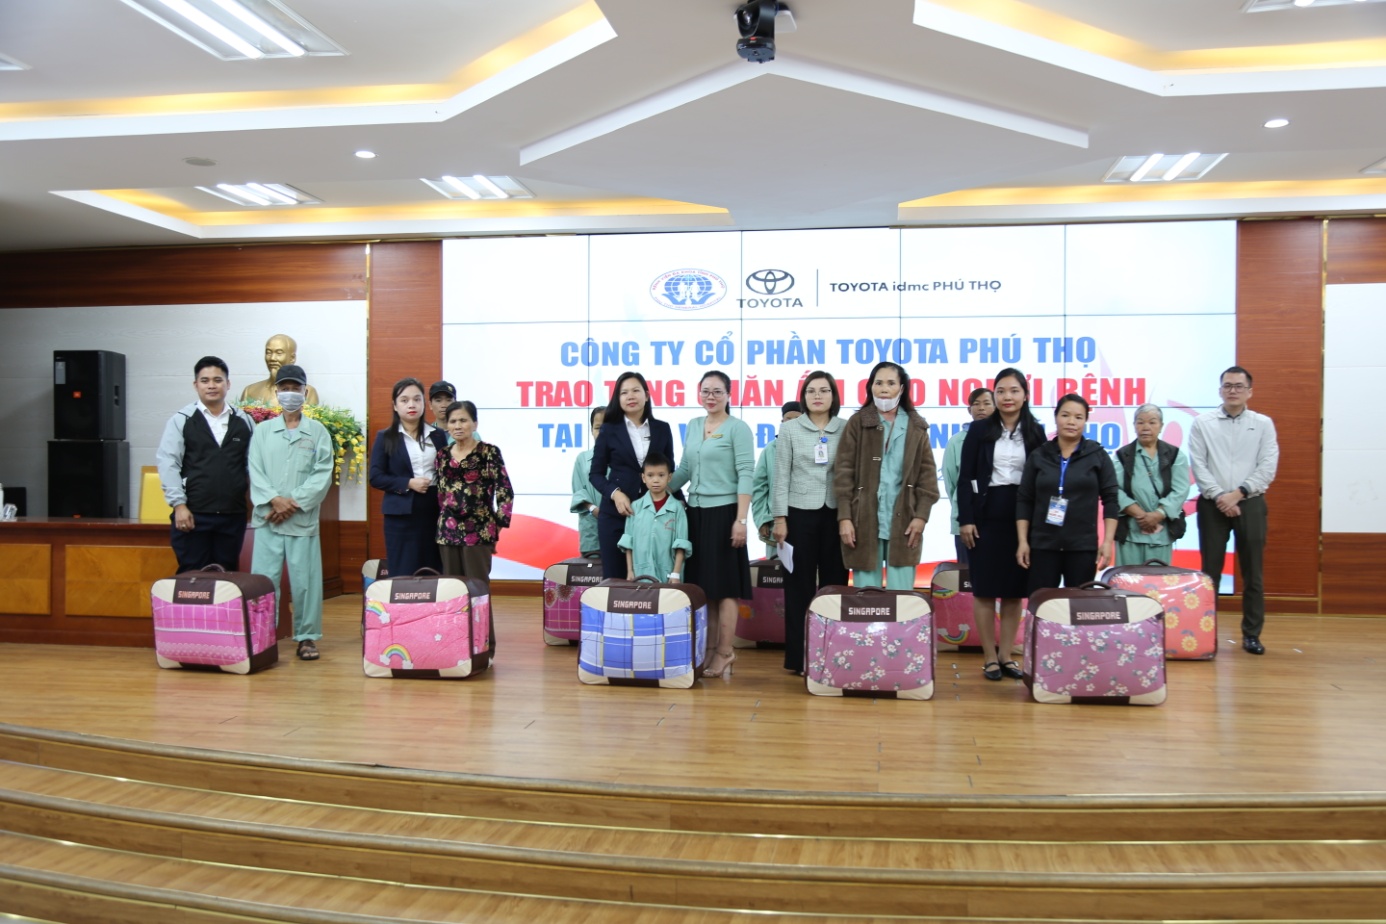 Toyota Phú Thọ trao tặng chăn ấm cho người bệnh có hoàn cảnh khó khăn đang điều trị tại Bệnh viện đa khoa tỉnh Phú Thọ